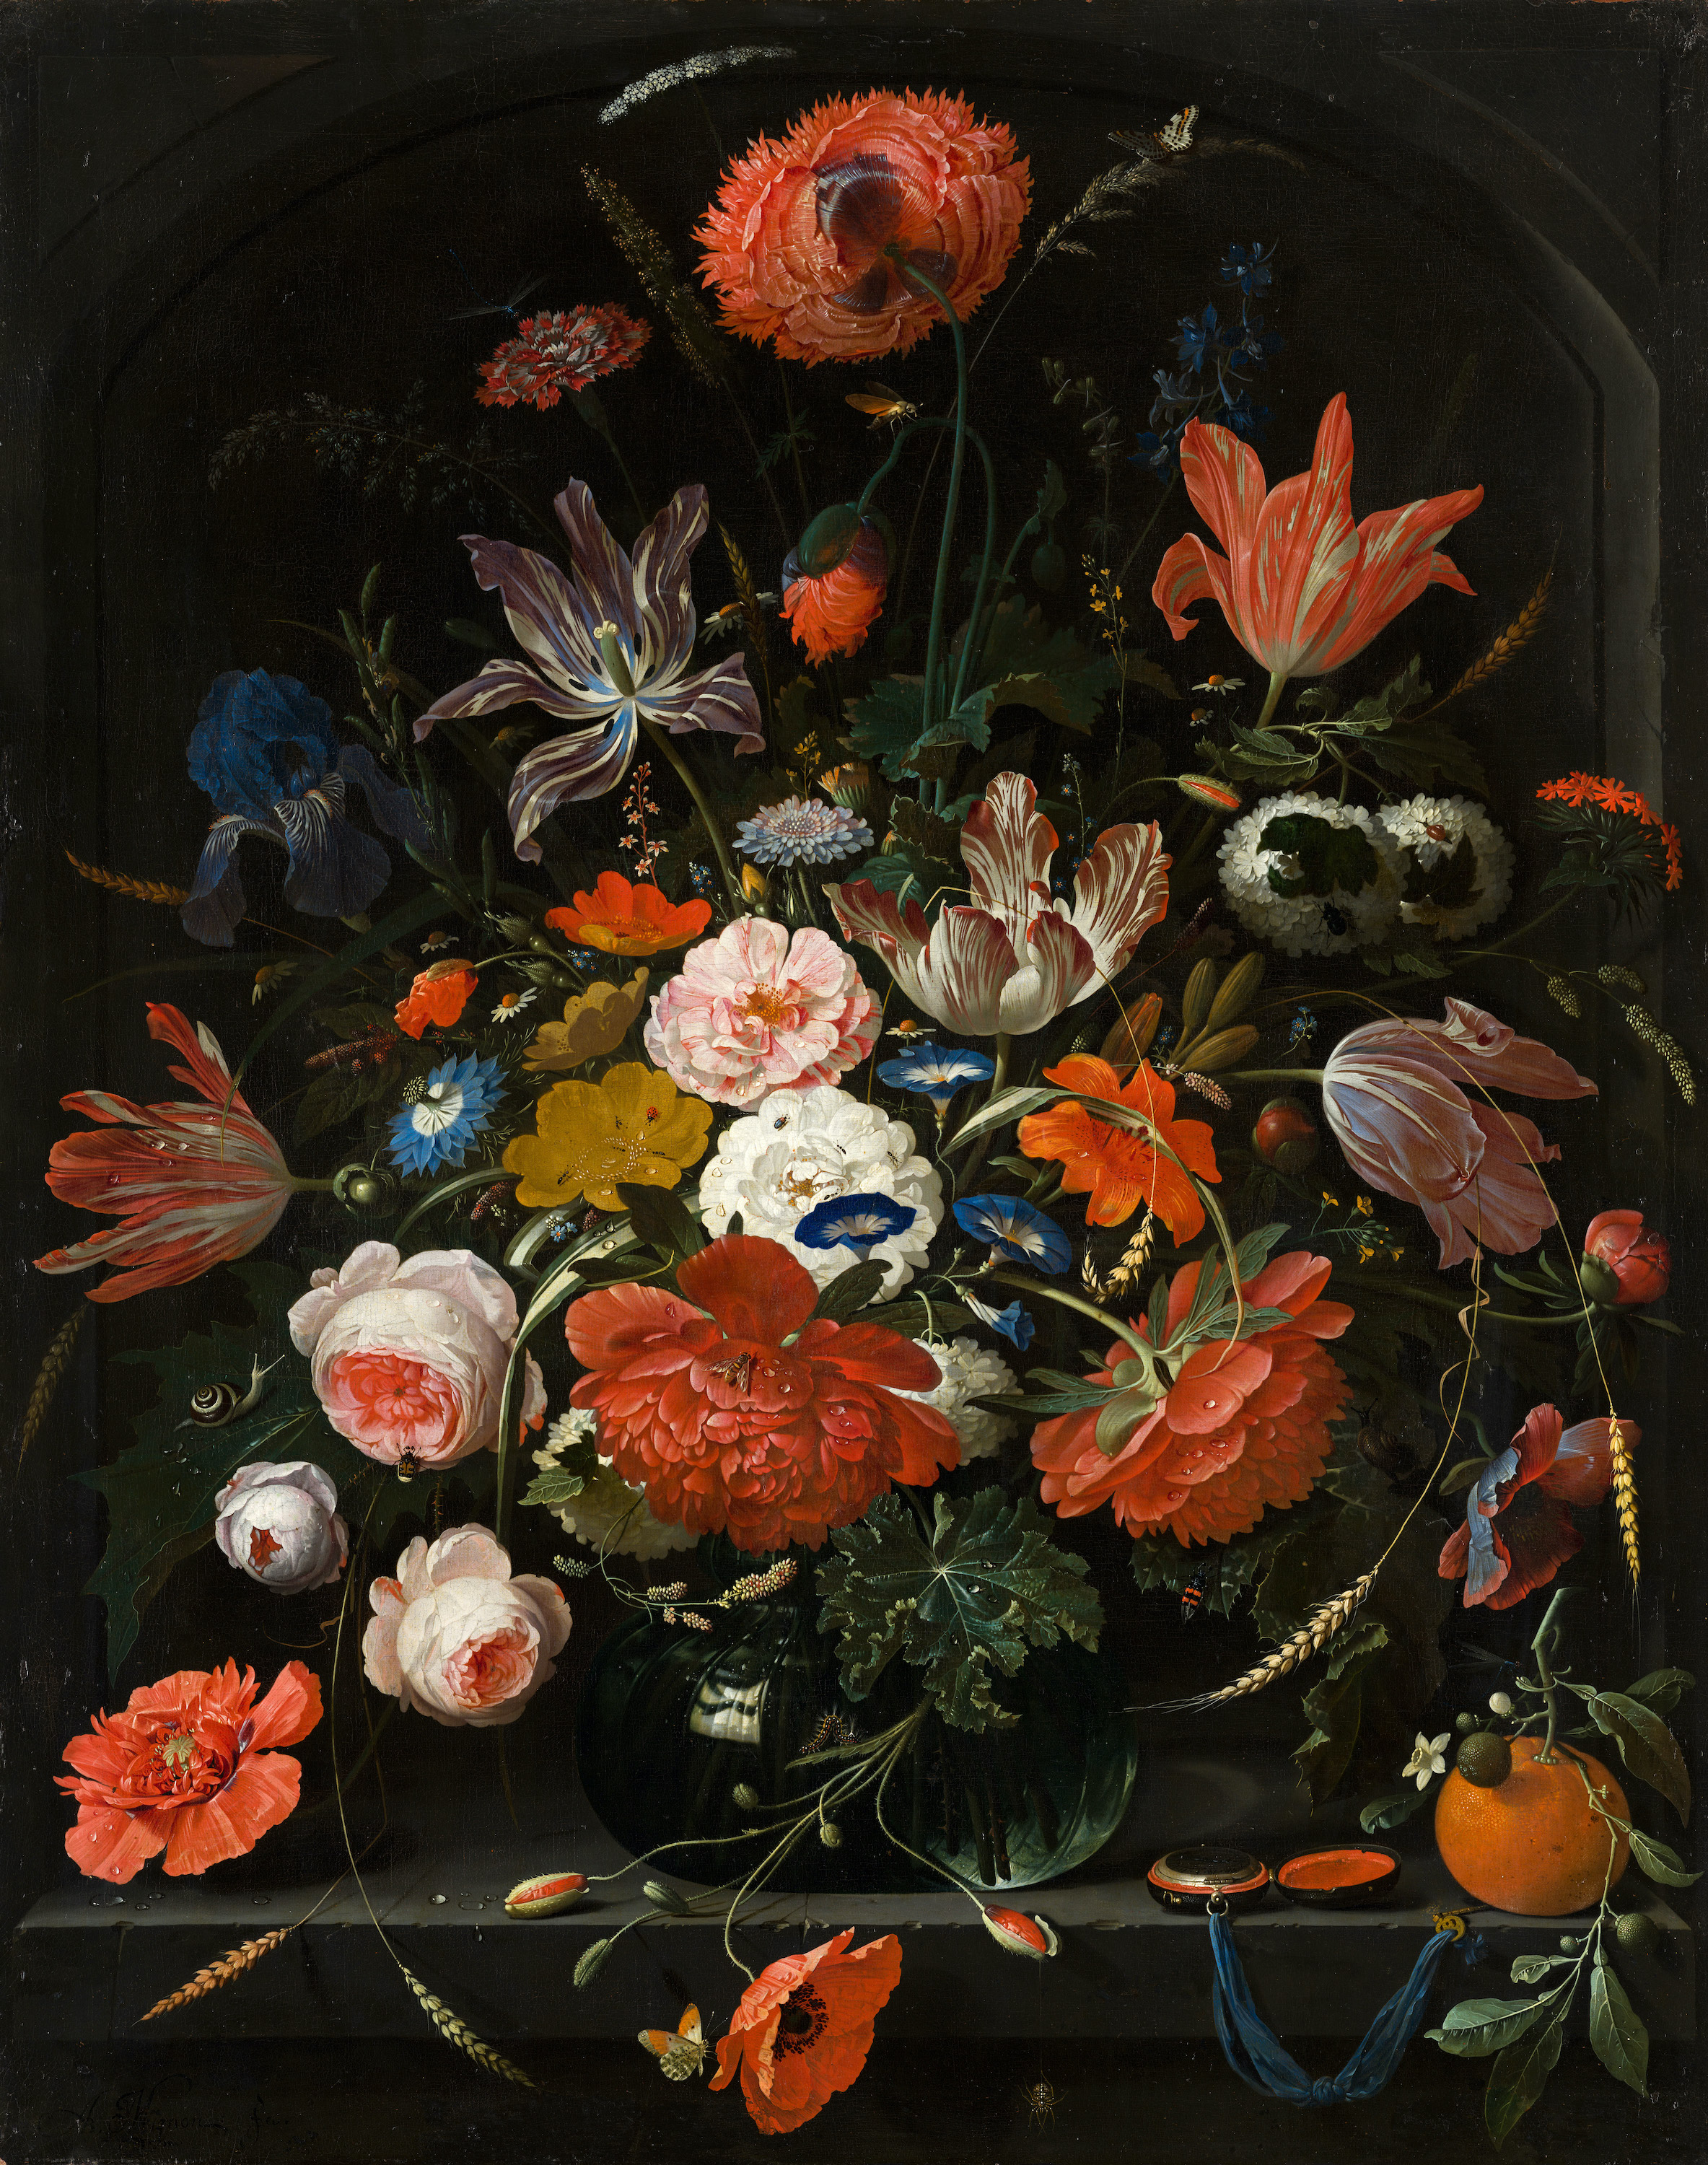 Blumen in einer Glasvase by Abraham Mignon - 1670 - 72,5 x 90 cm Mauritshuis